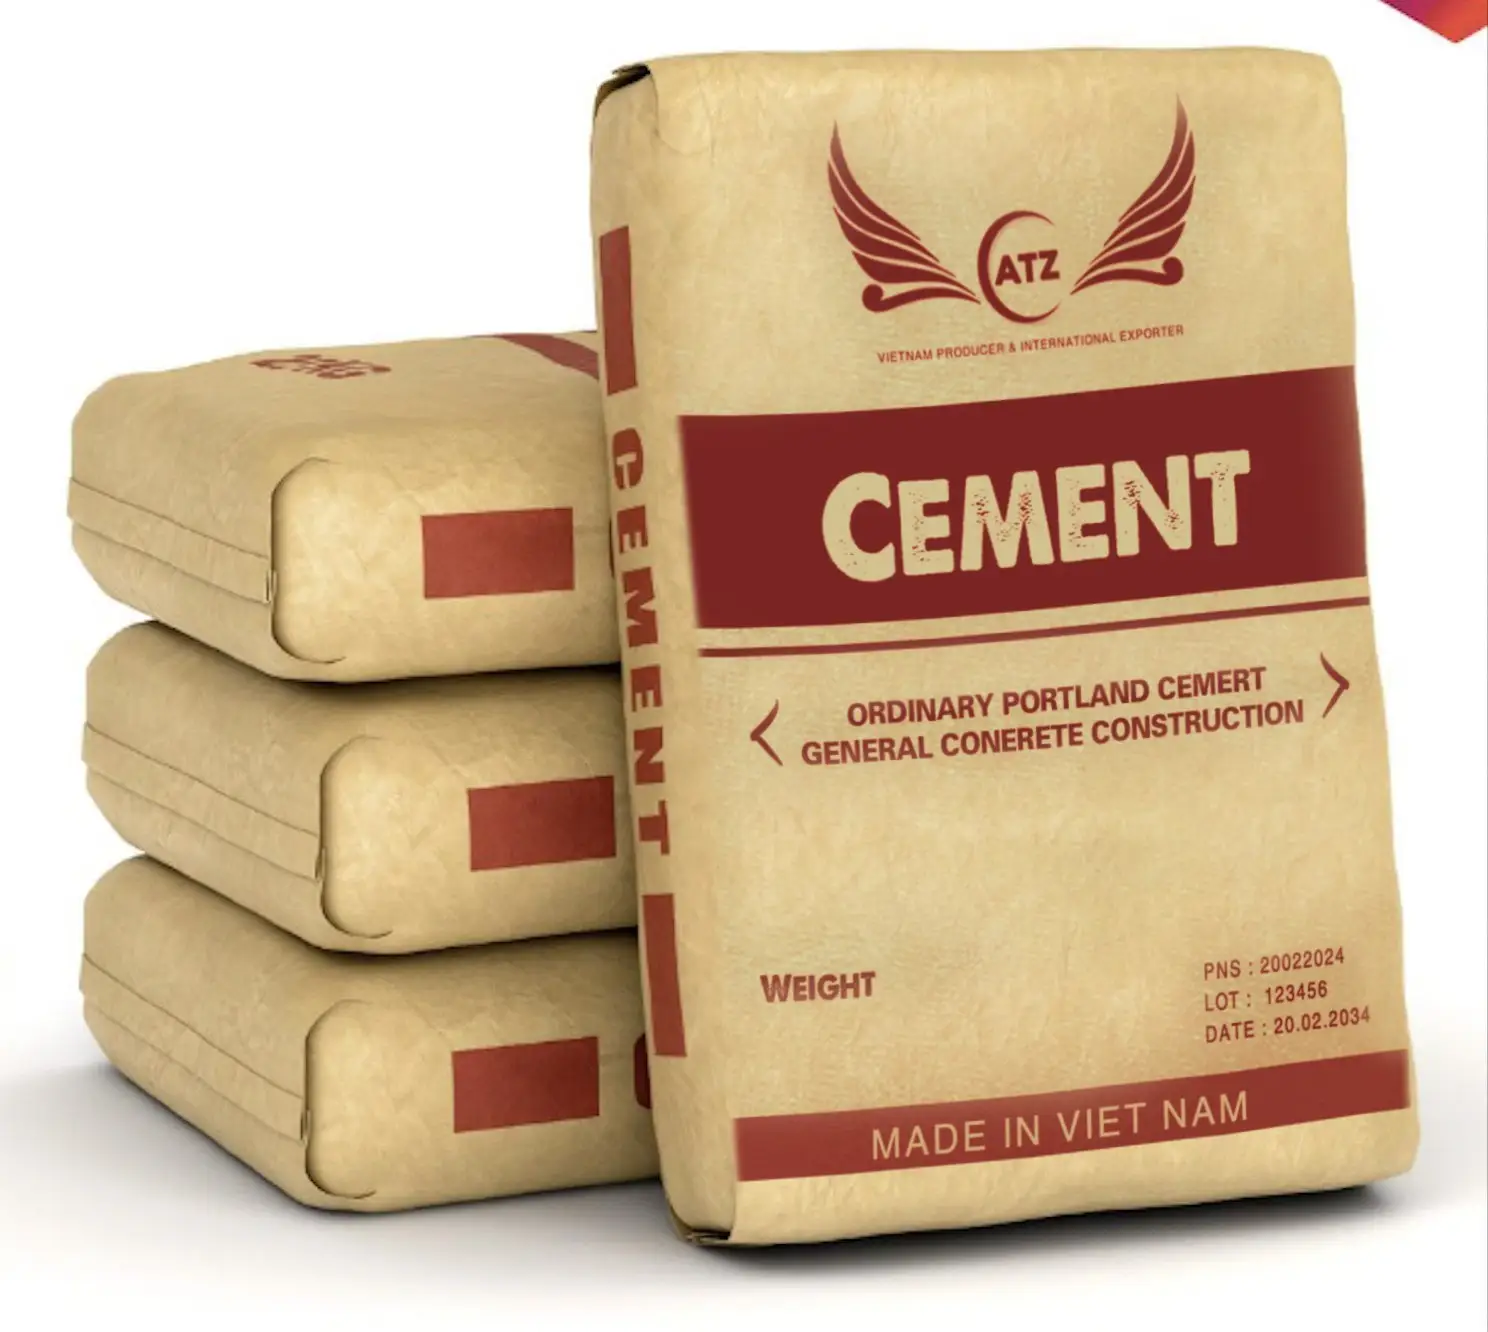 PORTLAND CIMENT "ciment portland ordinaire" prix élevé et bon marché des matériaux de construction fabricant vietnamien